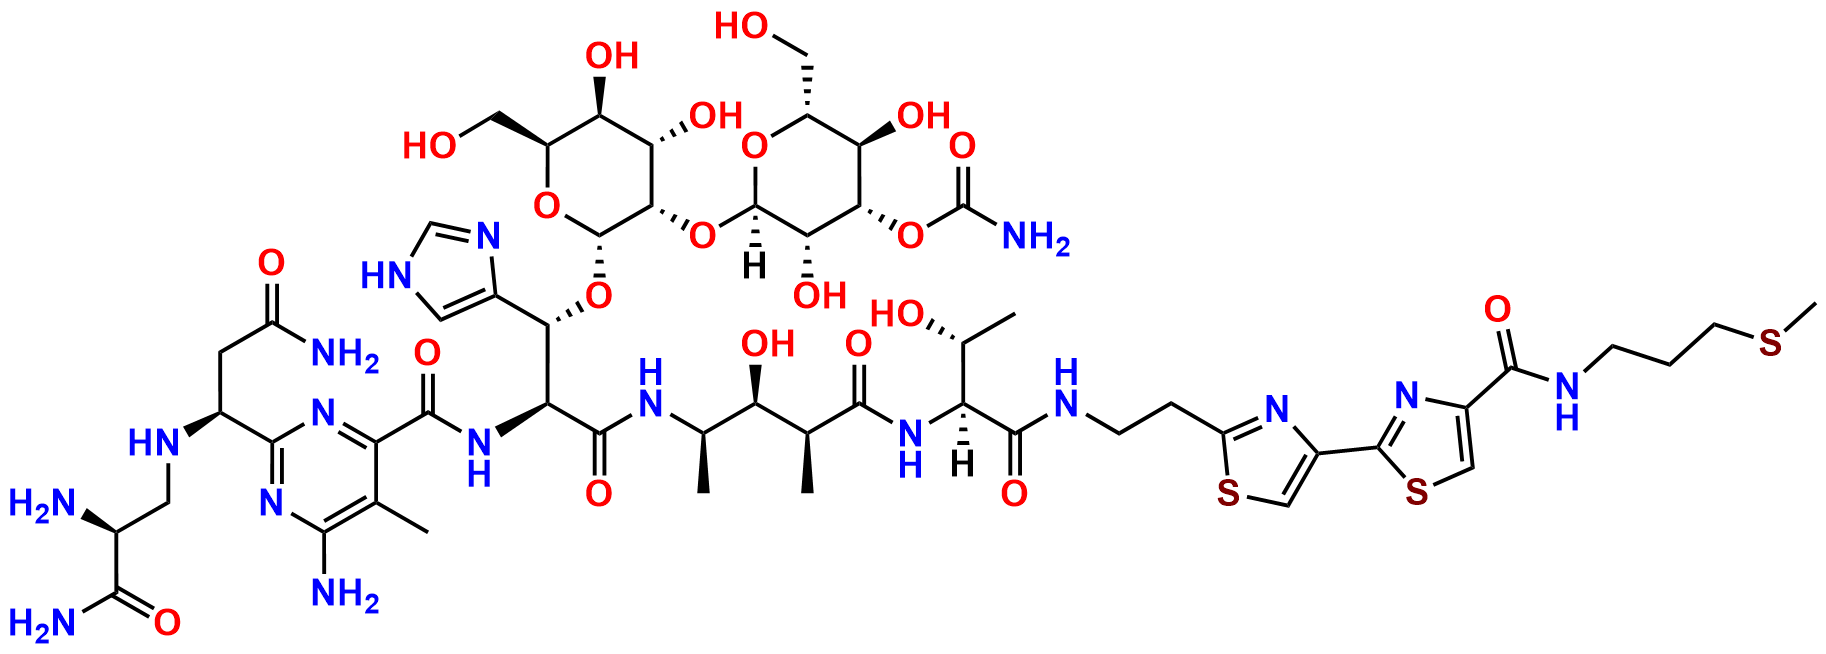 Demethylbleomycin A2